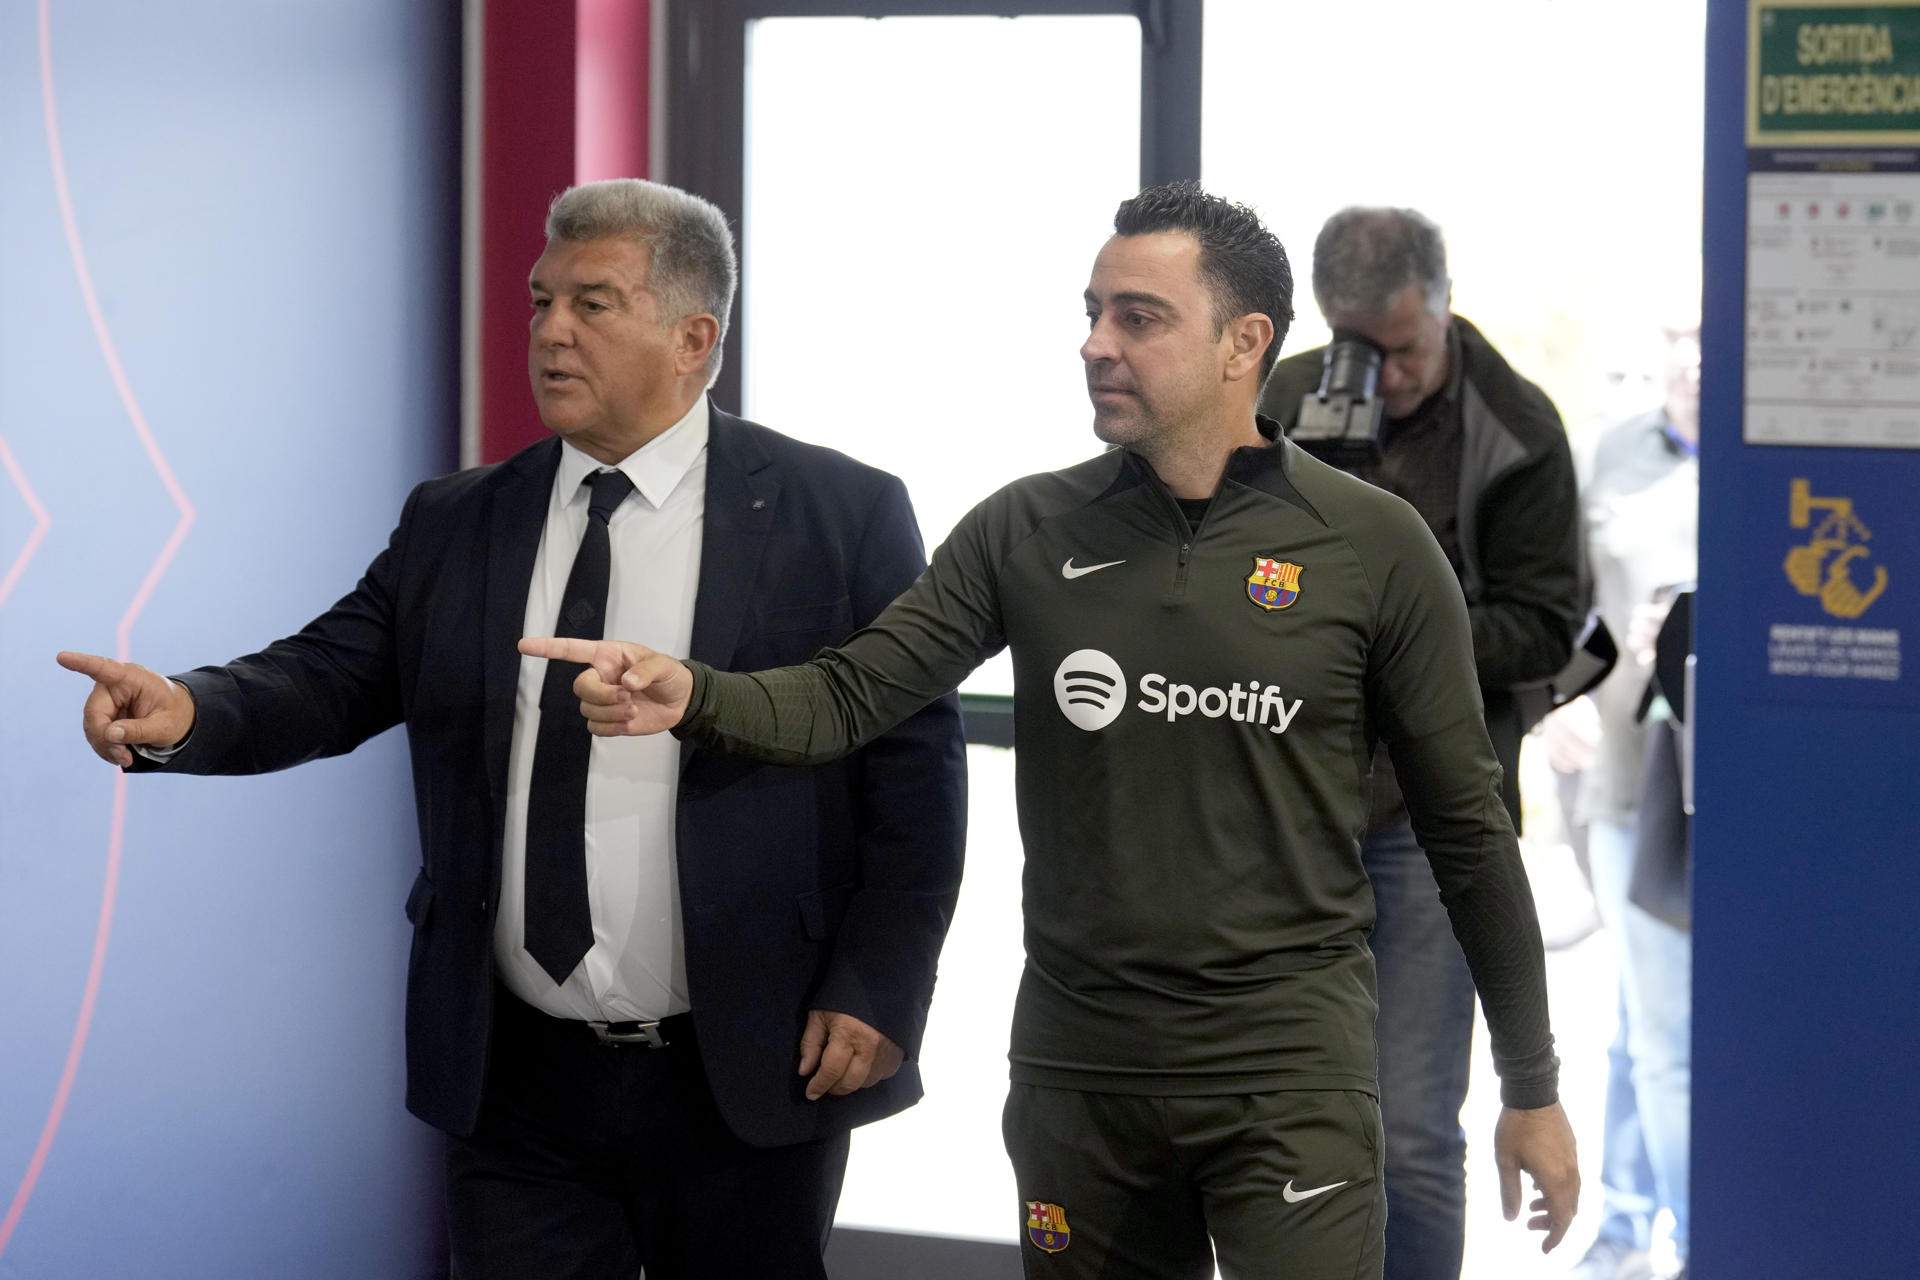 Joan Laporta s'afarta, la 15 del Reial Madrid i farà fora mig vestidor del Barça